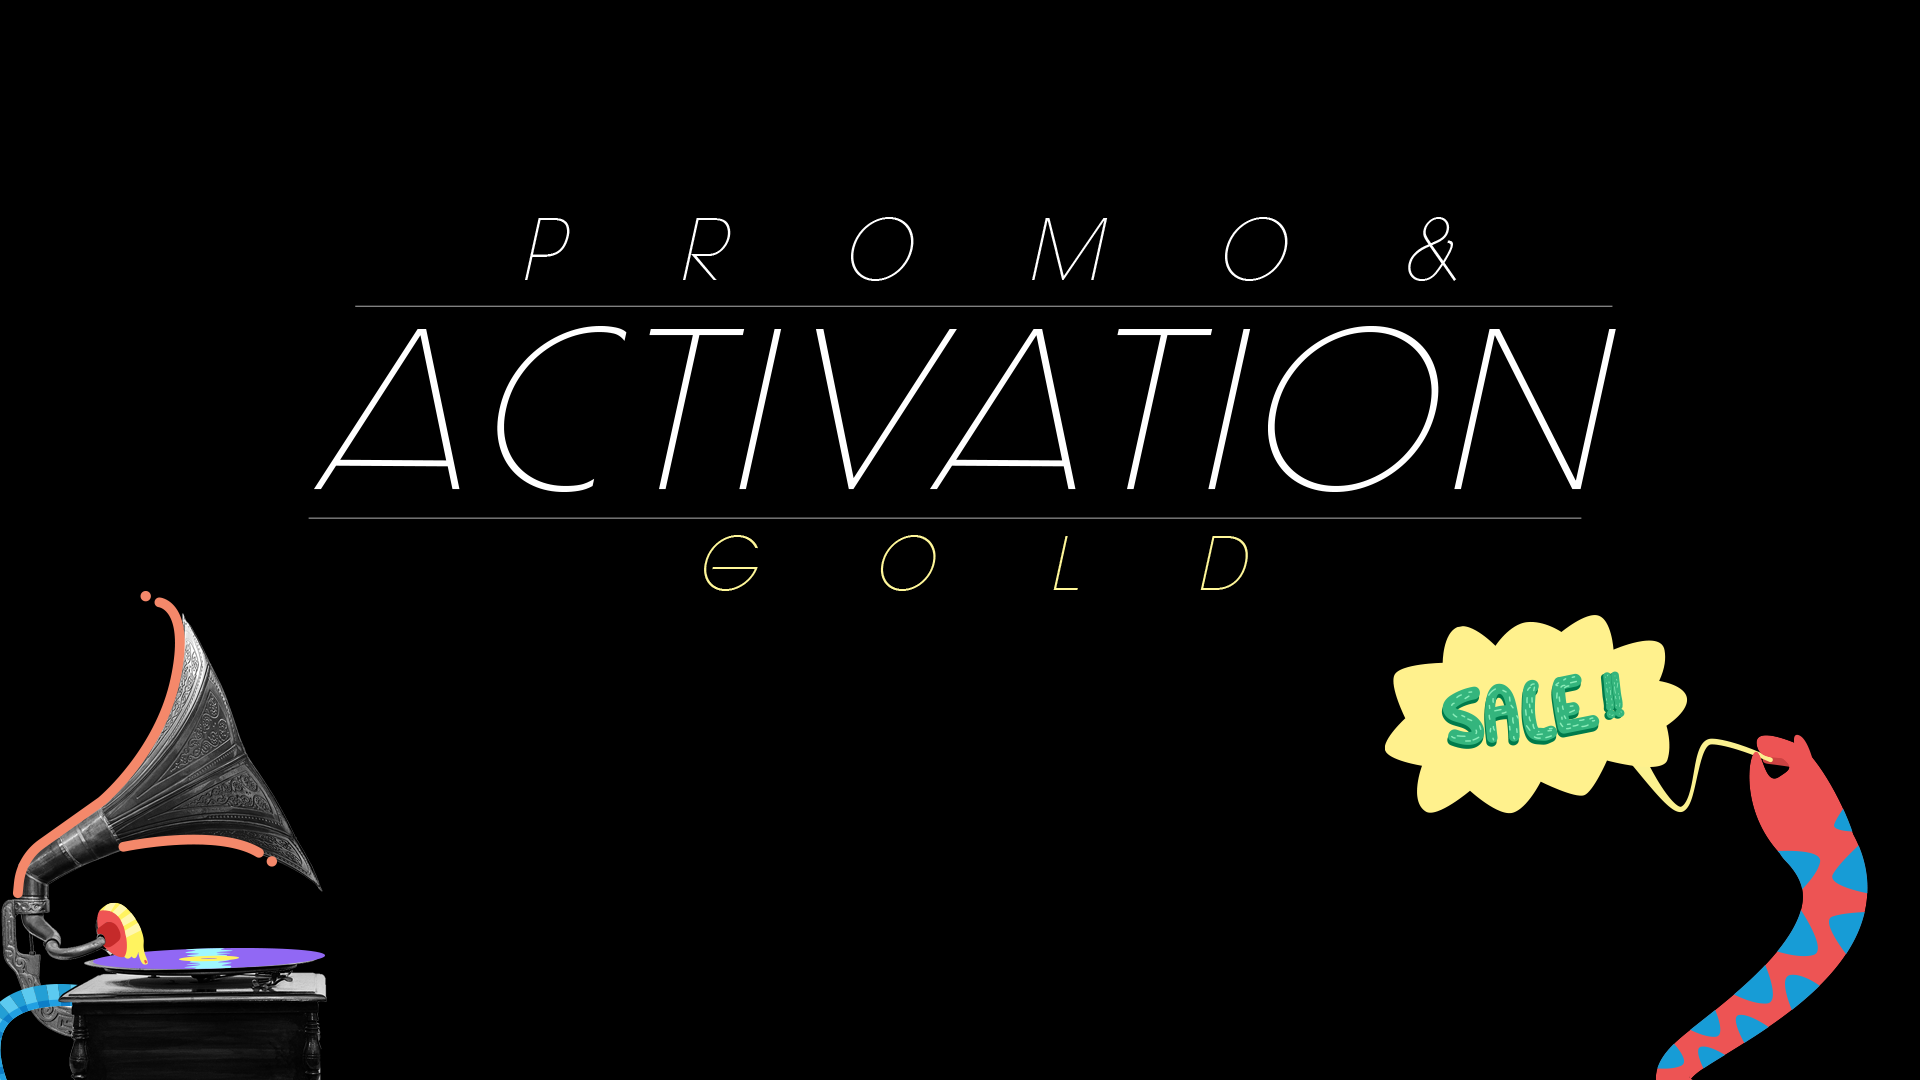 PLACAS PREMIOS-promo activation-GOLD.png